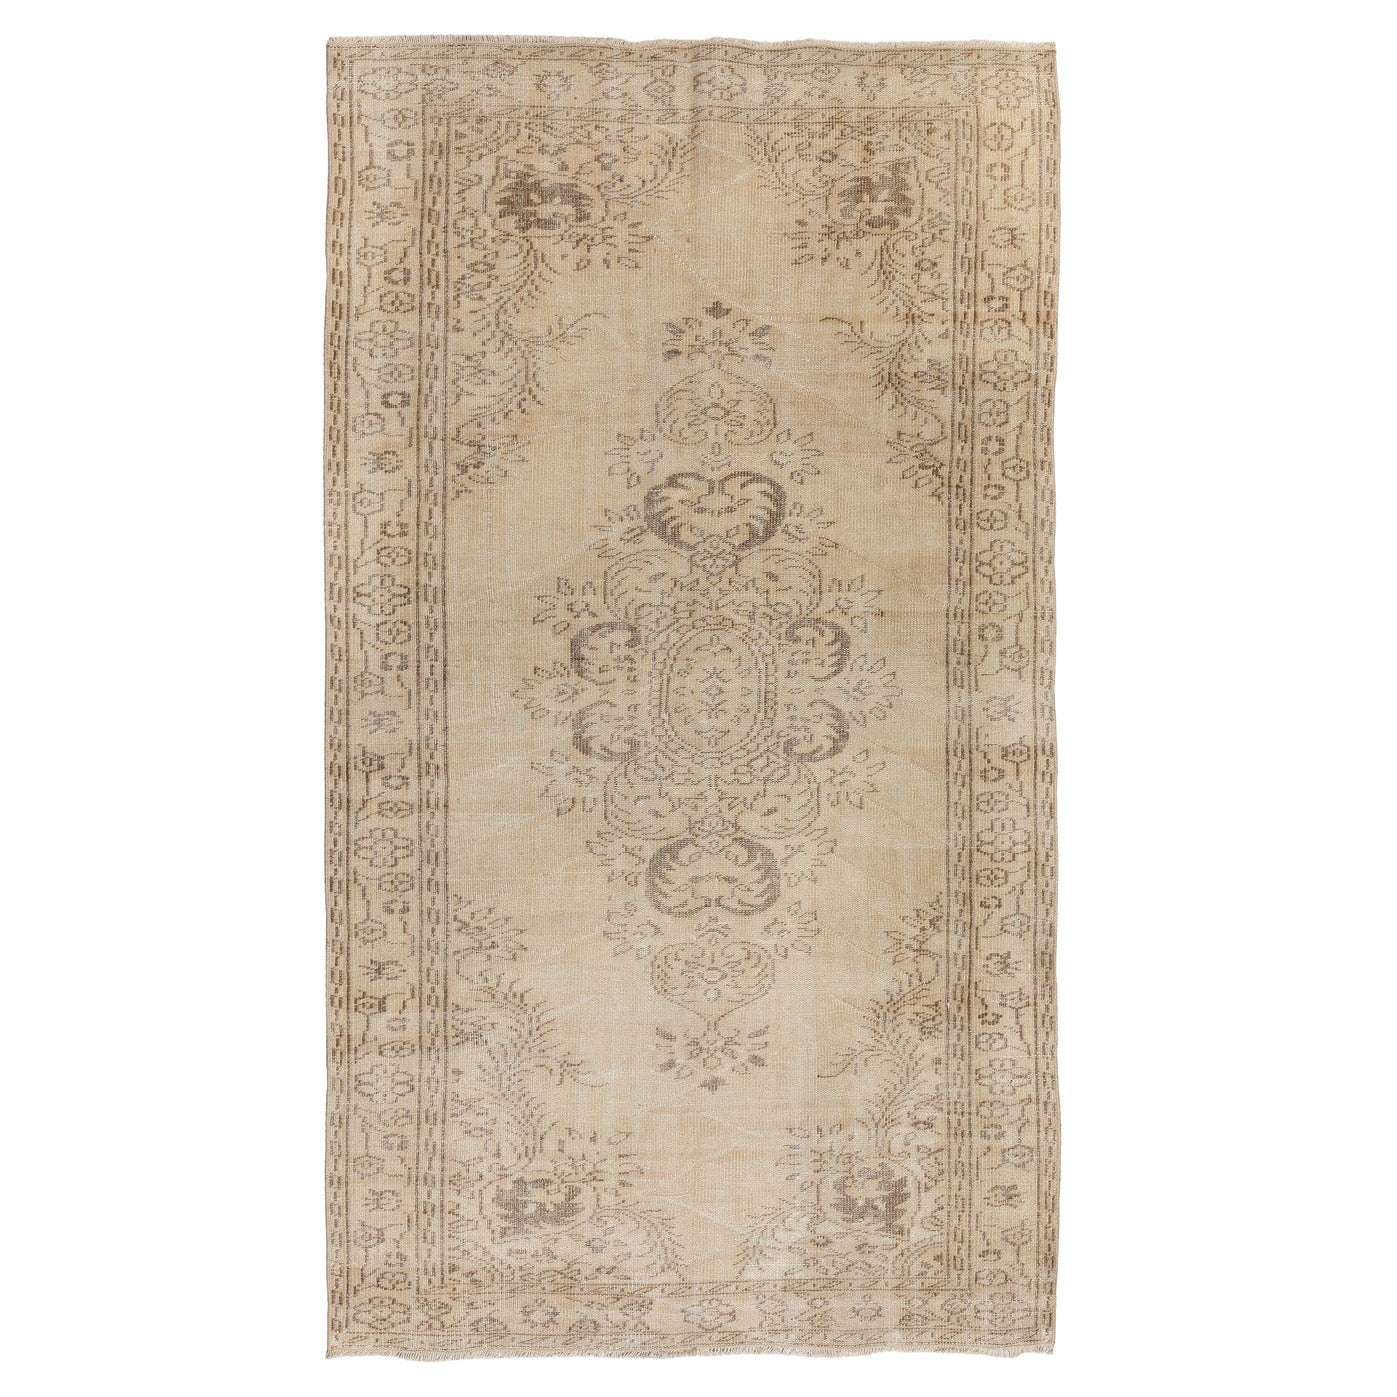 5.3x9.2 Ft Handgefertigter Vintage-Teppich in neutralen Farben, verblasster anatolischer Teppich